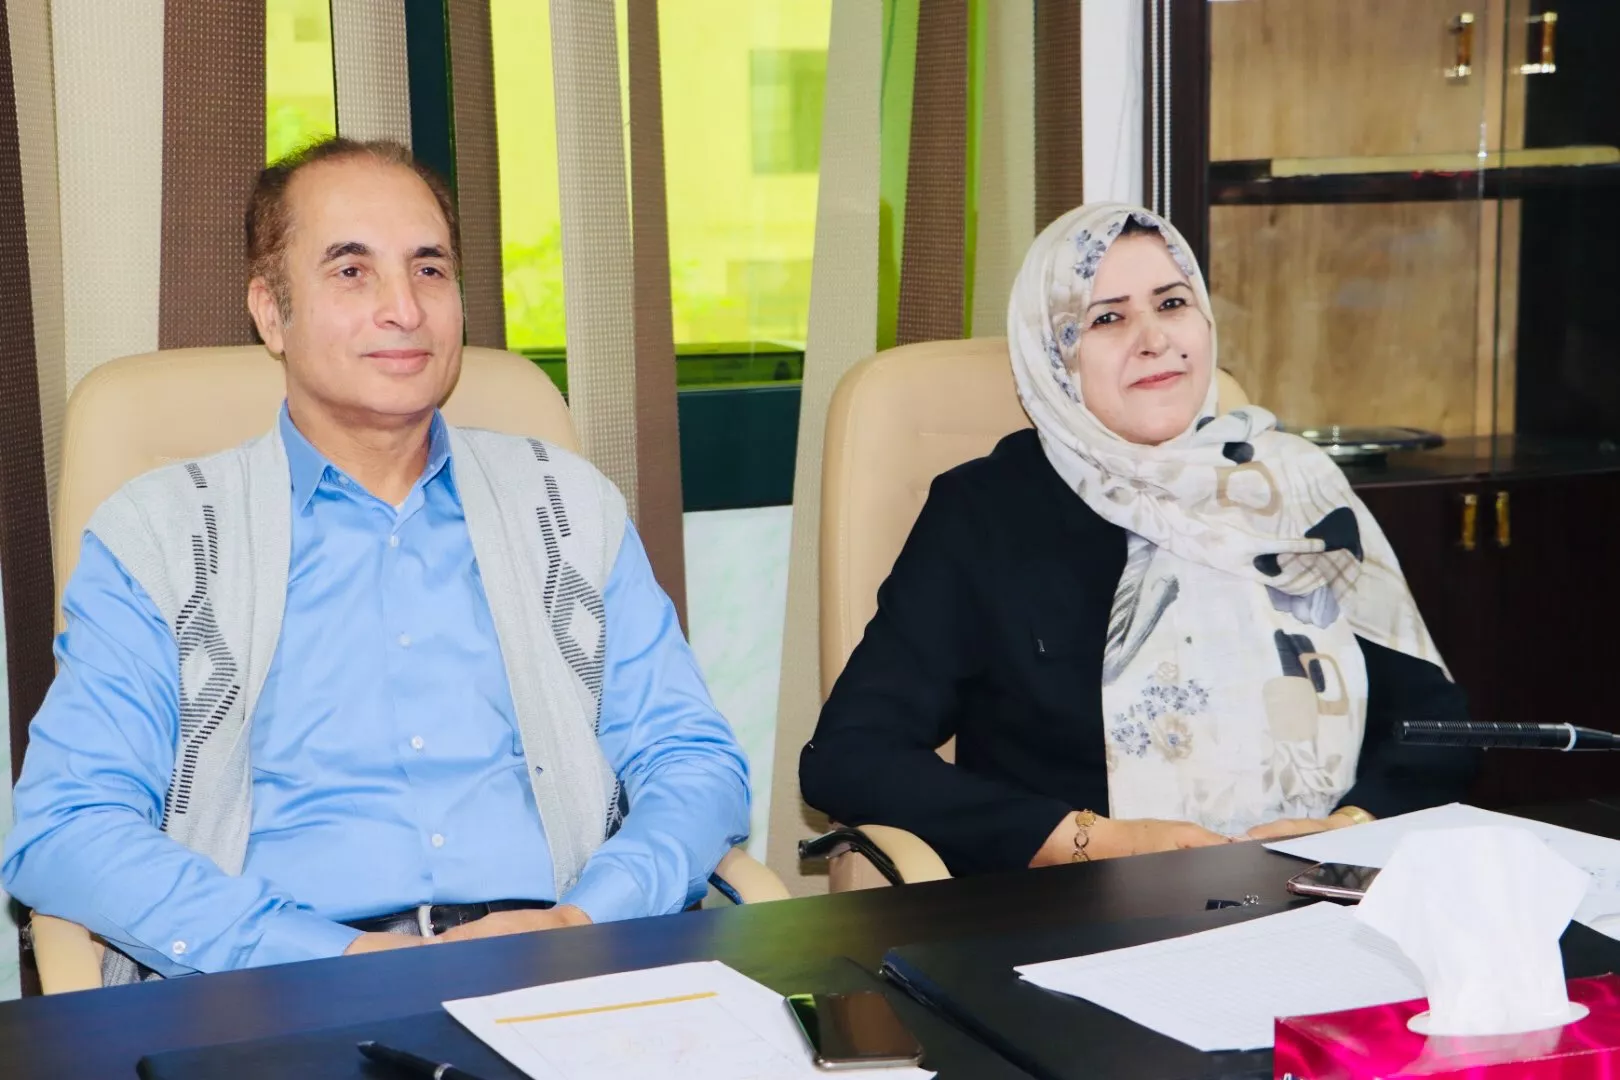 الأكاديمية الليبية تنظم لقاء تعريفي لطلبة الدكتوراه وتستضيف رئيسة الجامعة الملكية بالبحرين